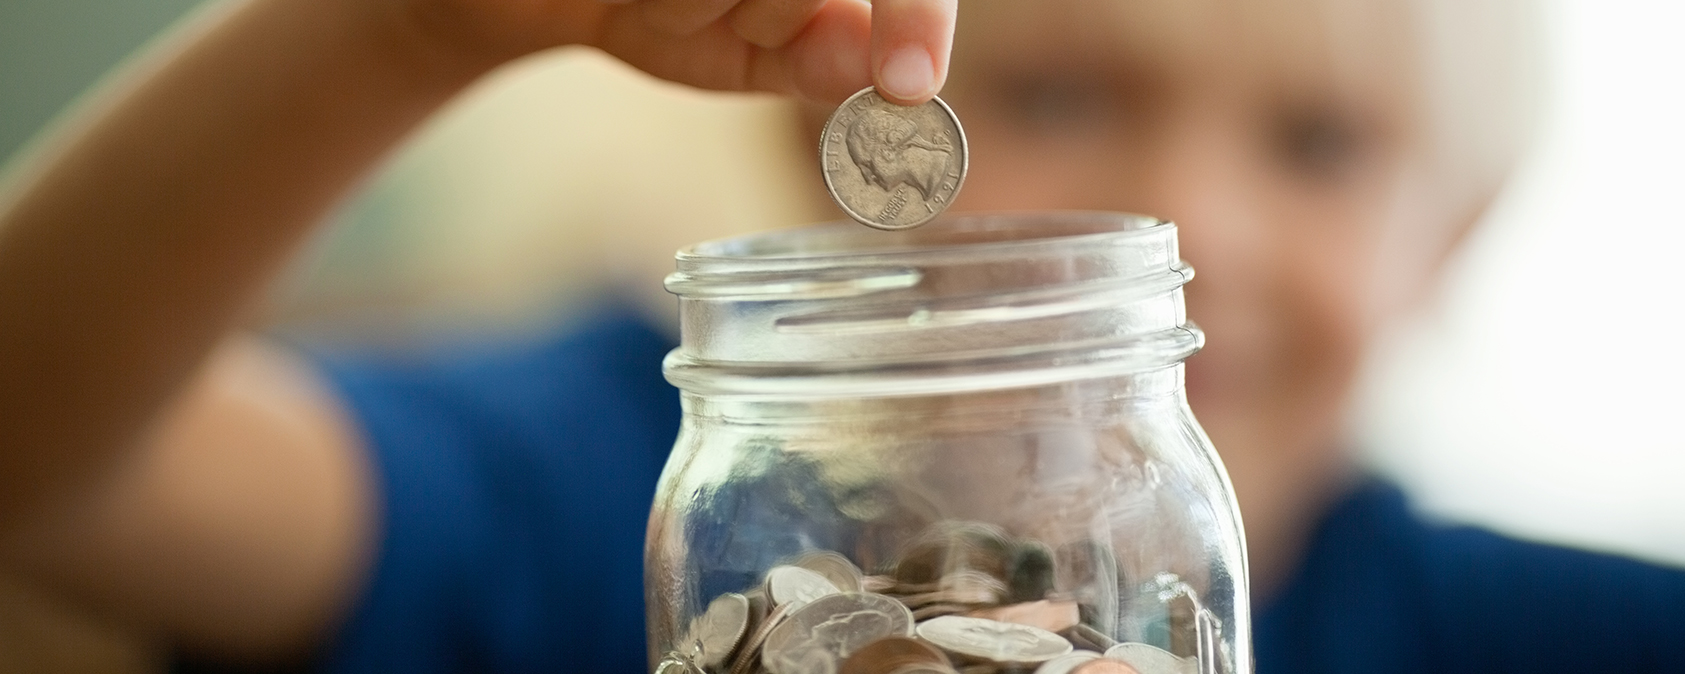 child putting coins in jar